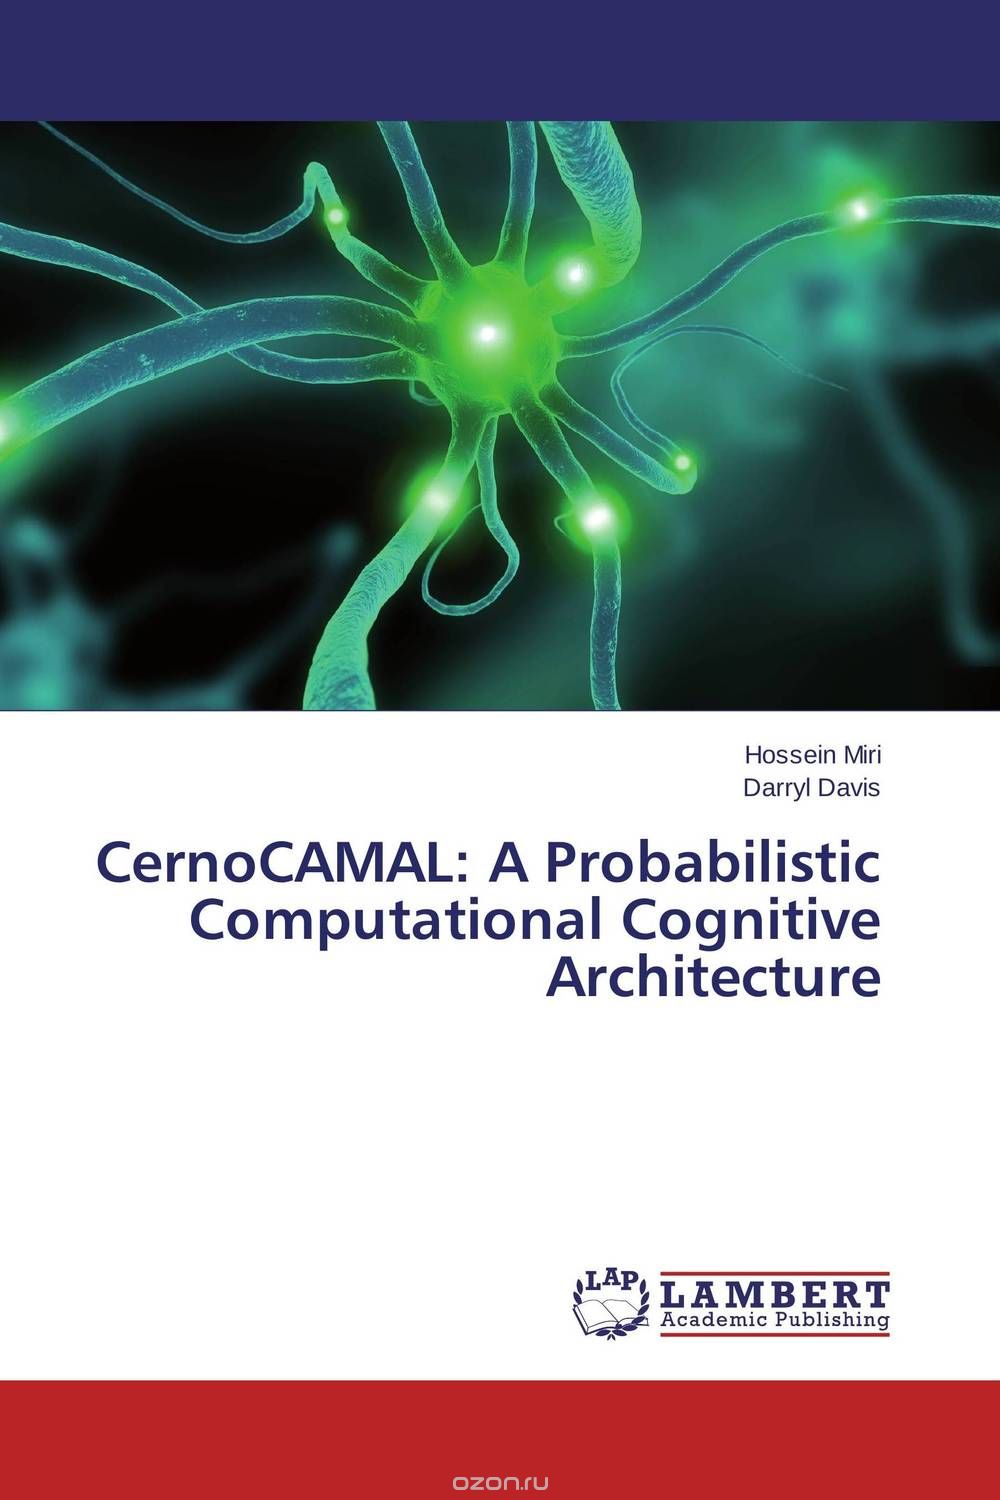 Скачать книгу "CernoCAMAL: A Probabilistic Computational Cognitive Architecture"